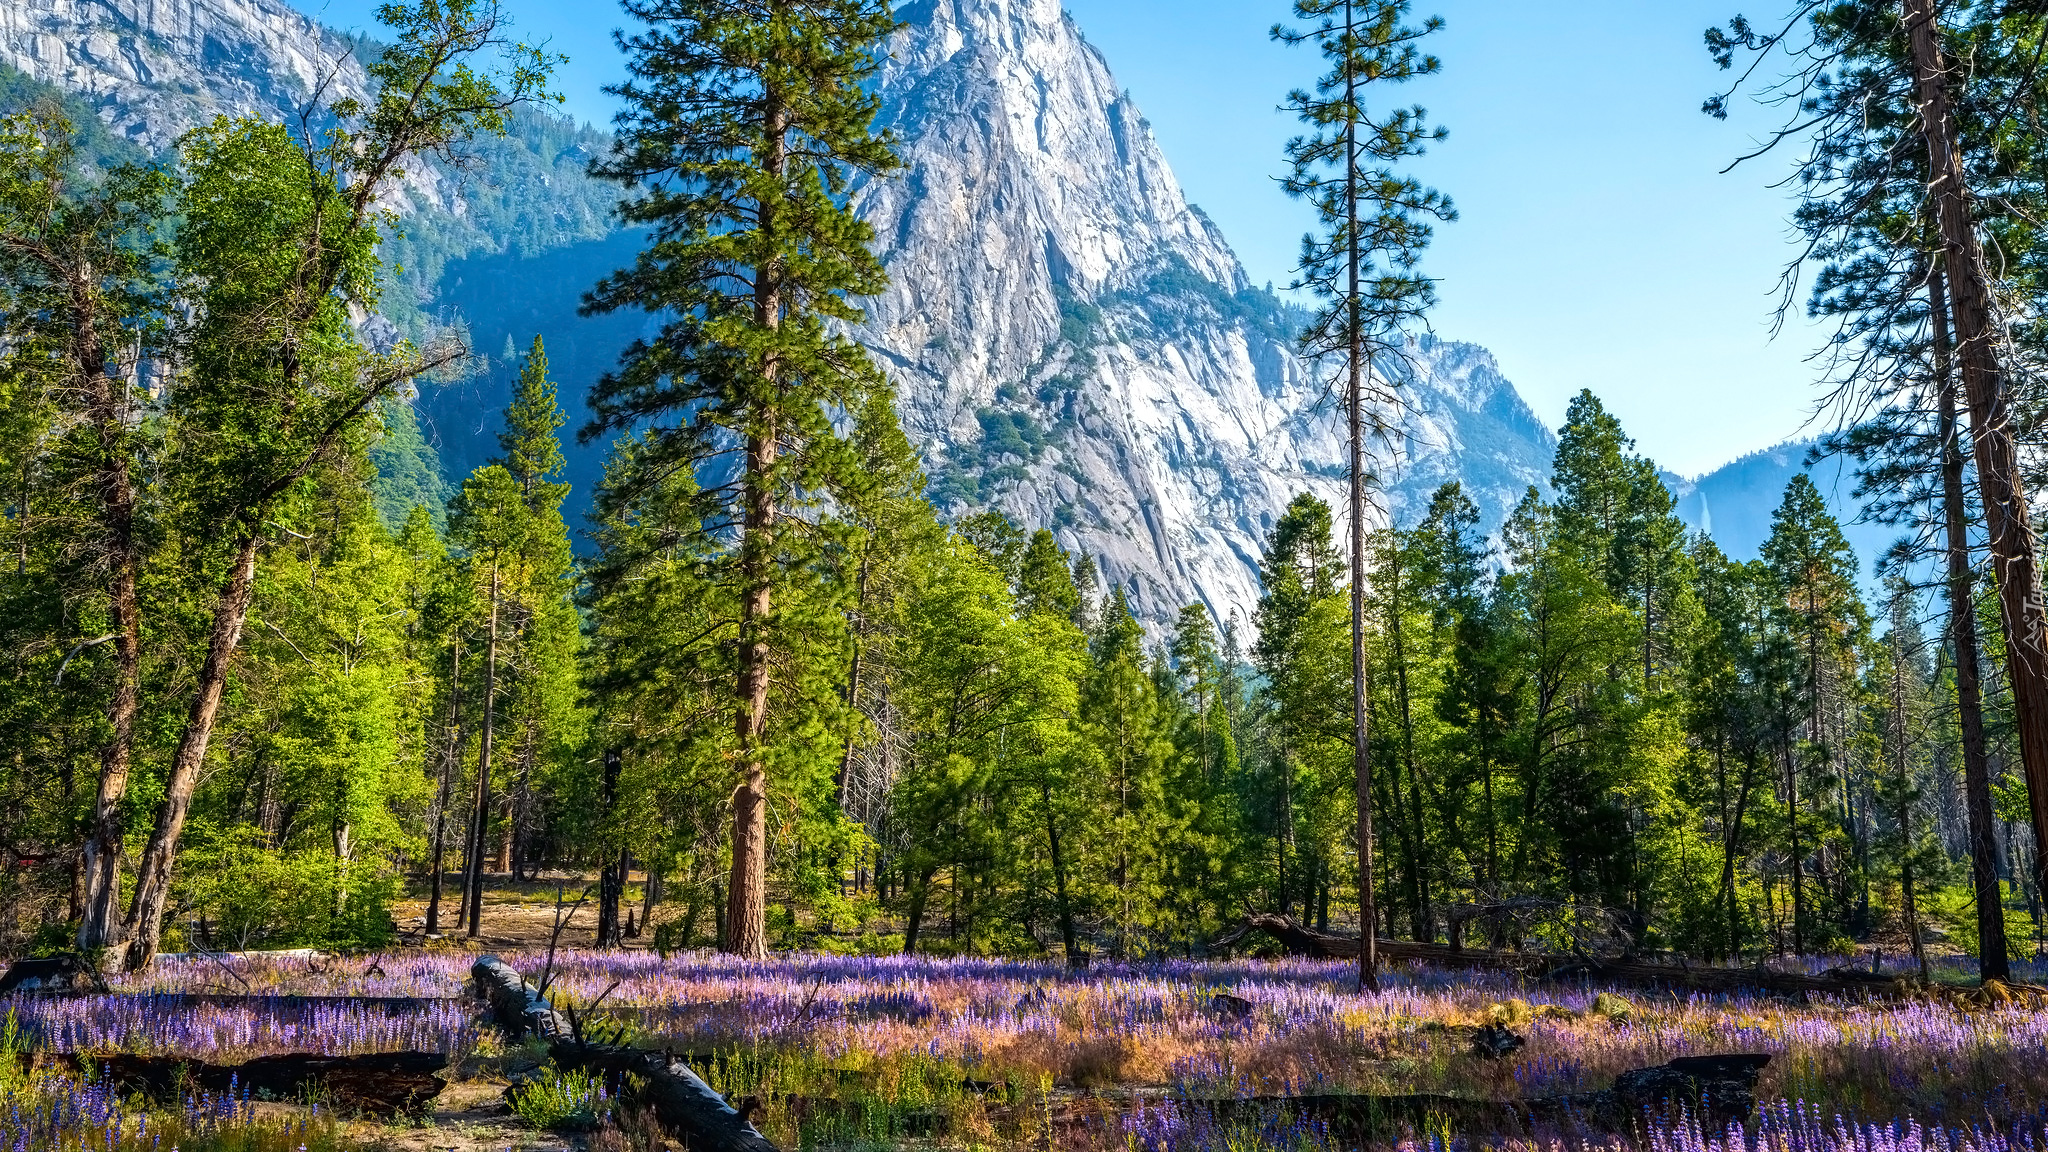 Góry, Drzewa, Kwiaty, Łubin, Park Narodowy Yosemite, Kalifornia, Stany Zjednoczone